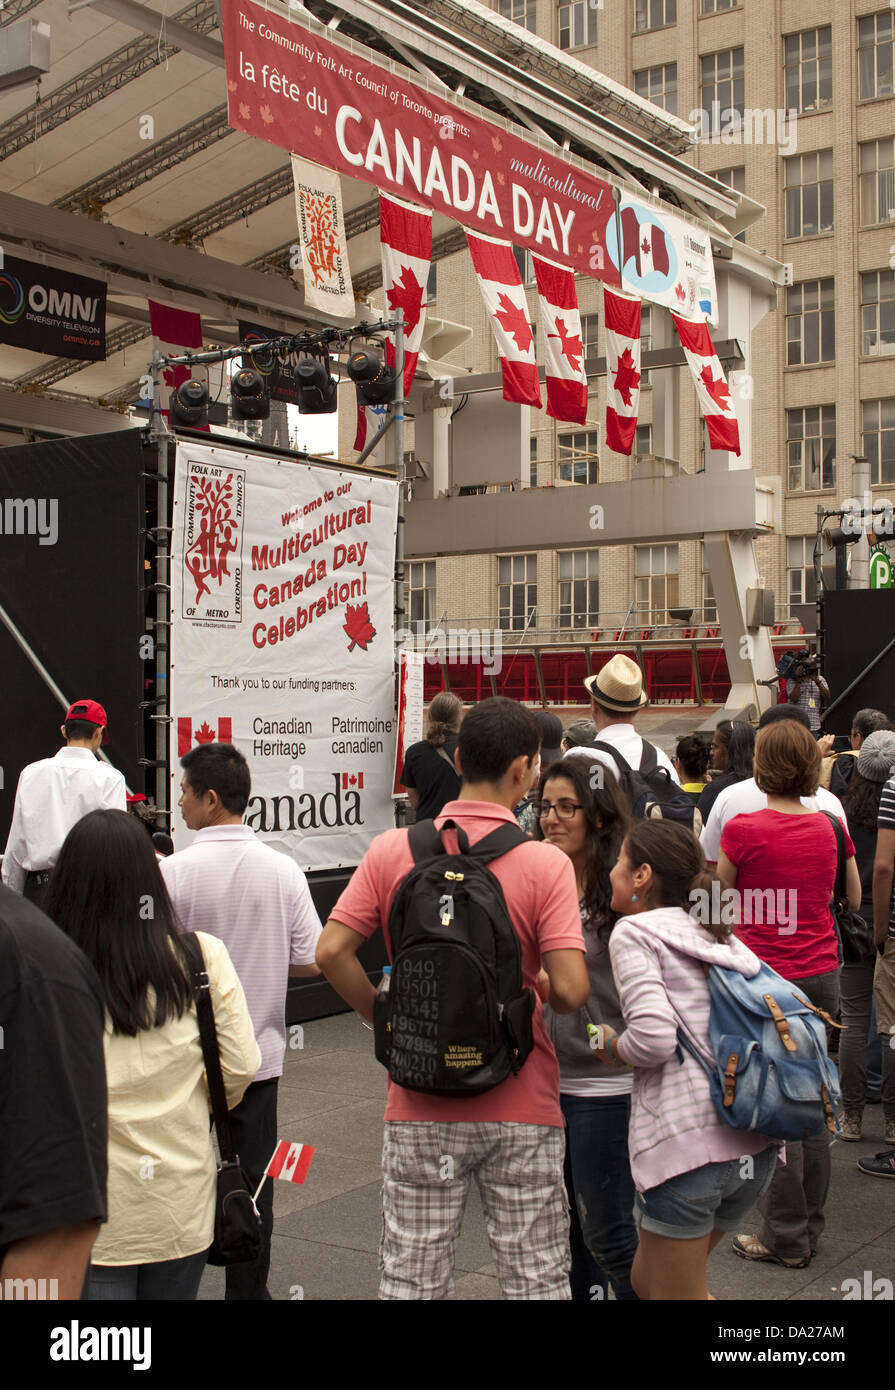 Toronto, Kanada. 1. Juli 2013. Menschen versammelten sich für multikulturelle Kanada Day Celebration am Yonge-Dundas Square 1. Juli 2013 in Toronto, Kanada. Bildnachweis: Igor Kisseleff/Alamy Live-Nachrichten Stockfoto